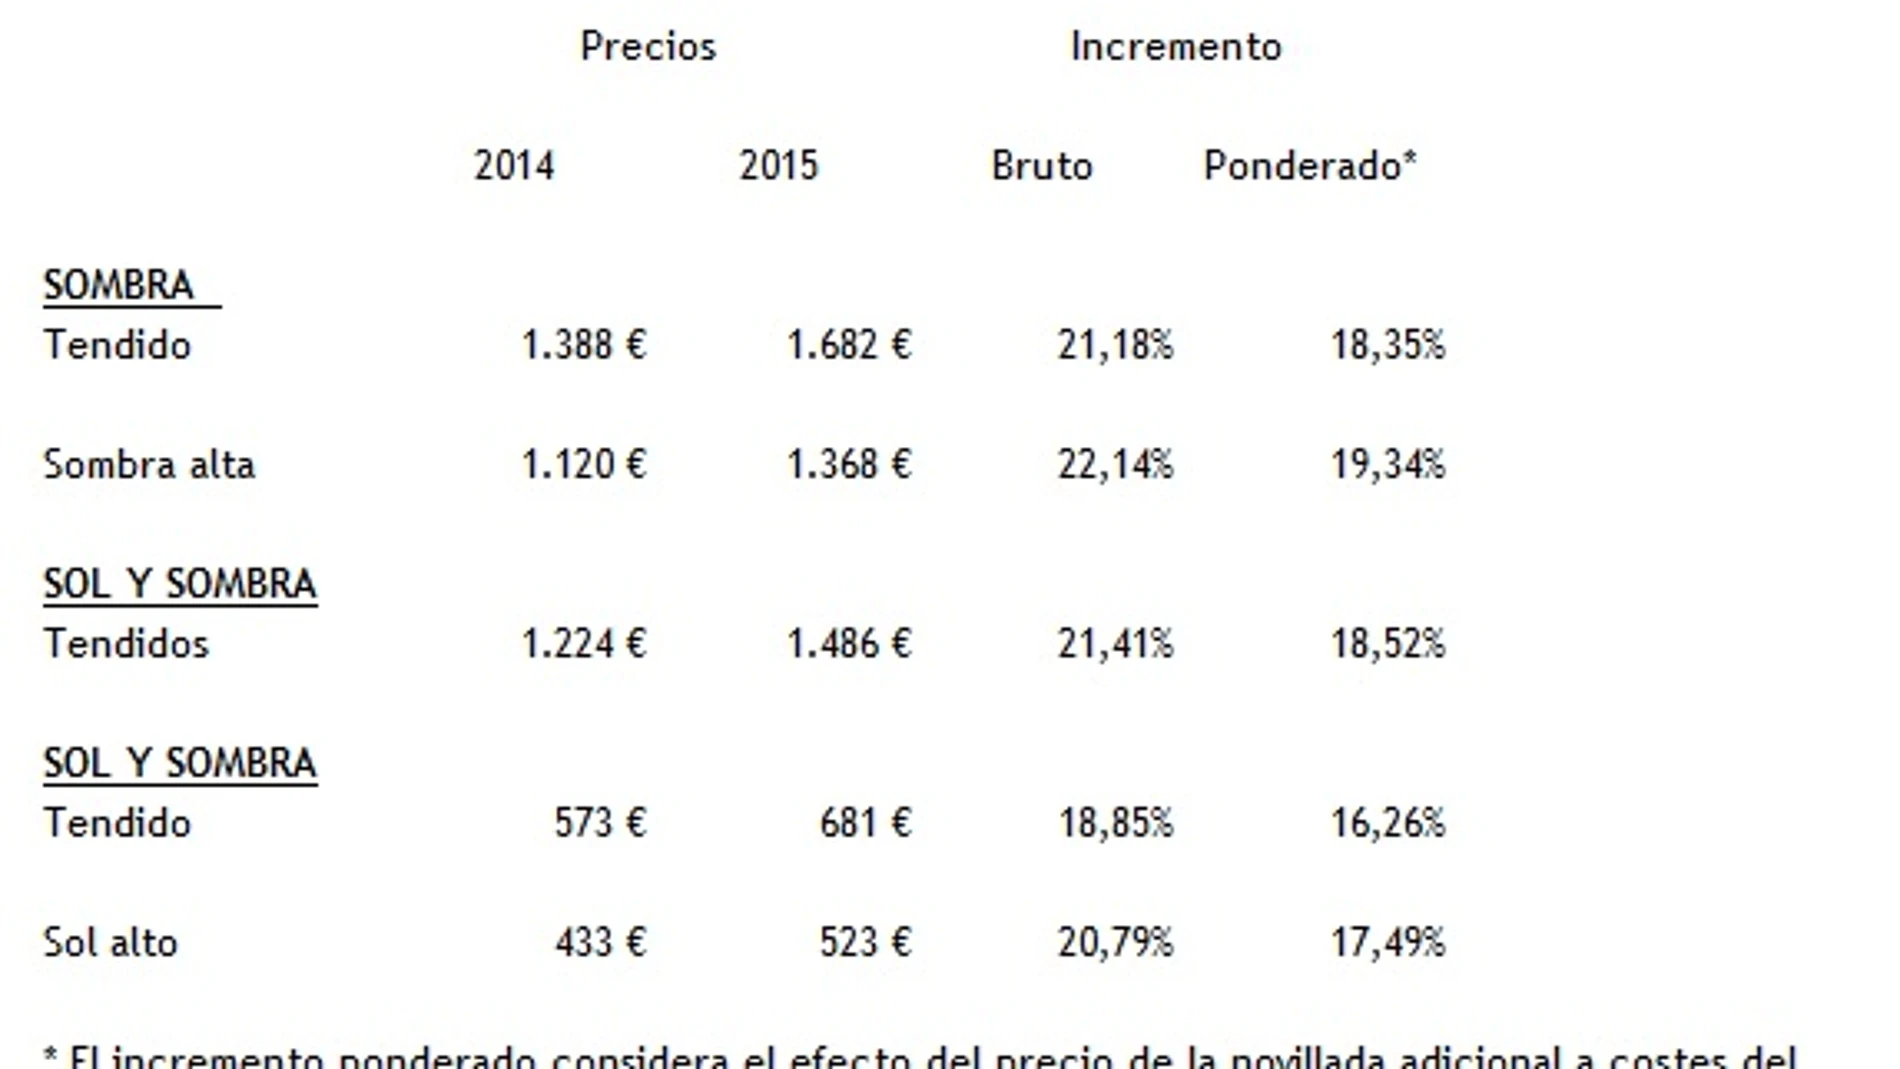 Cuadro de precios relativos a 2014 y 2015 publicado por Ignacio Sánchez-Mejías